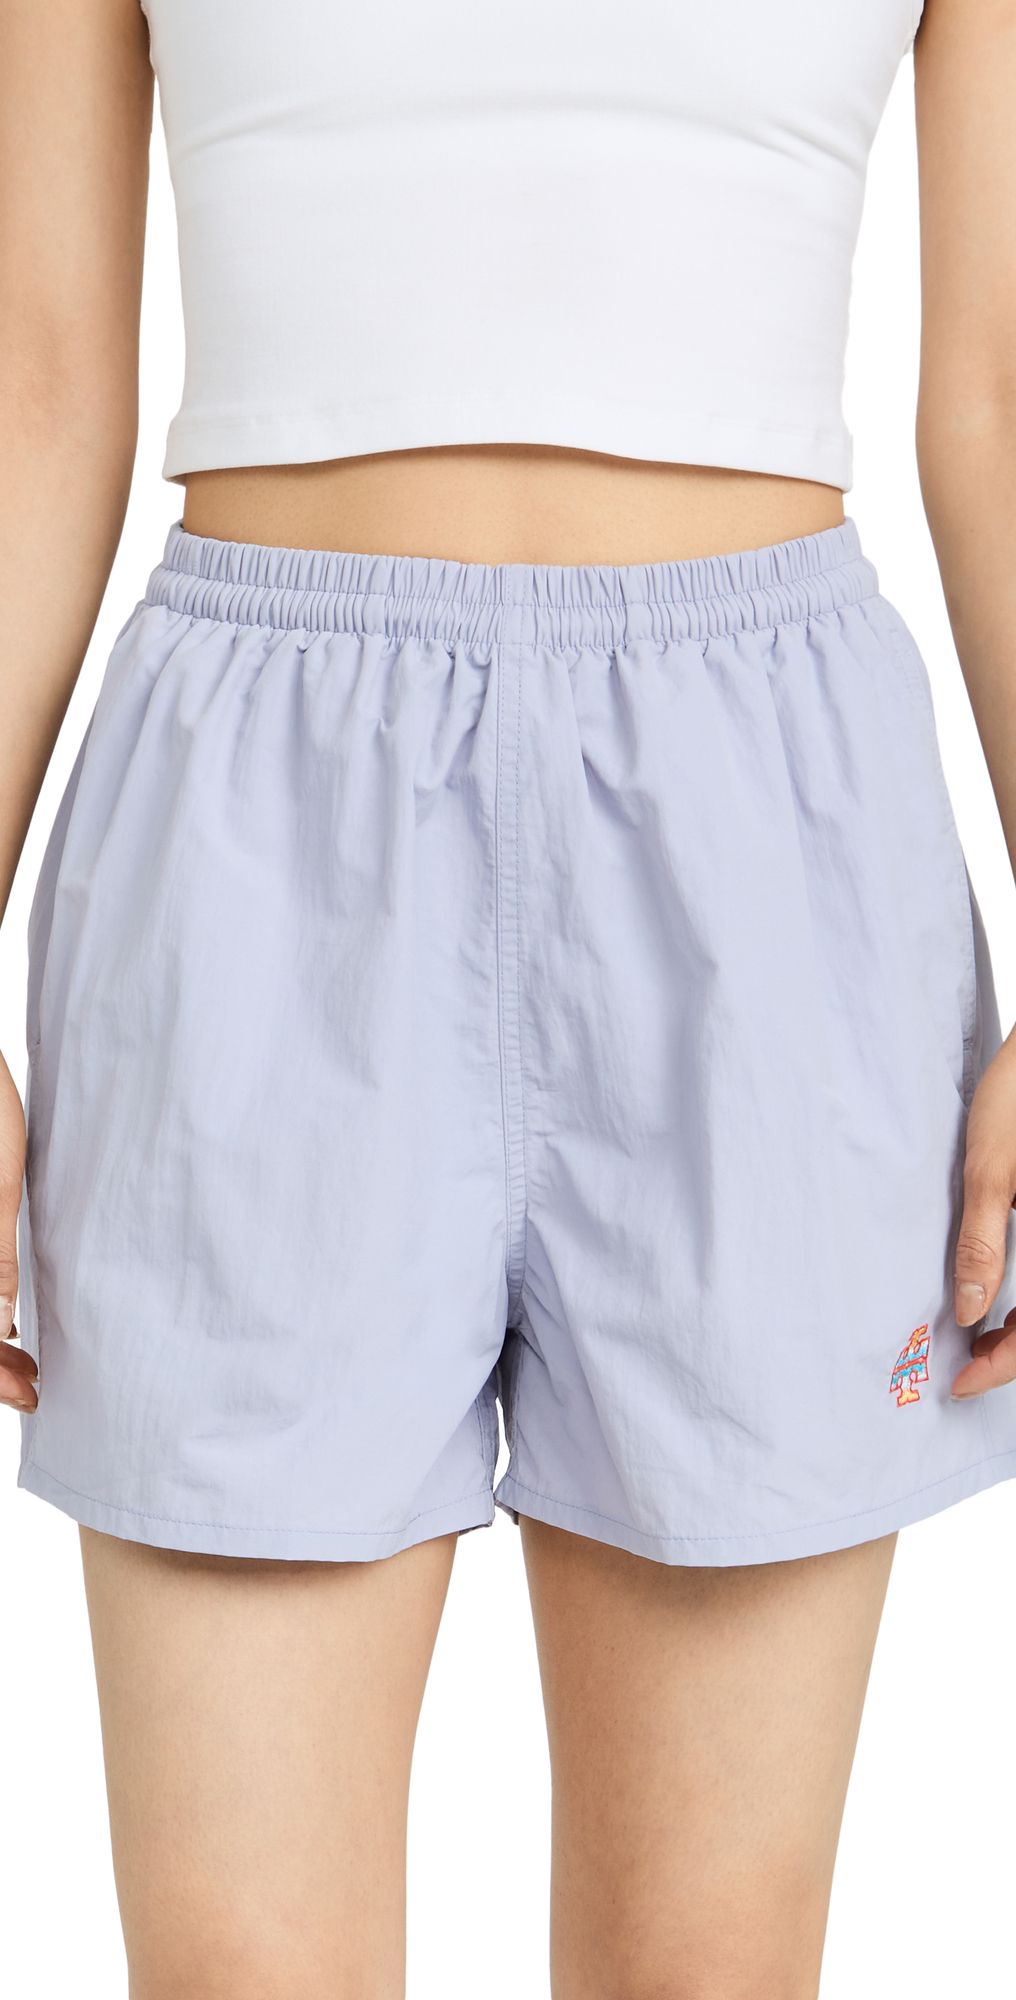 Easy Performance Nylon Shorts | Shopbop